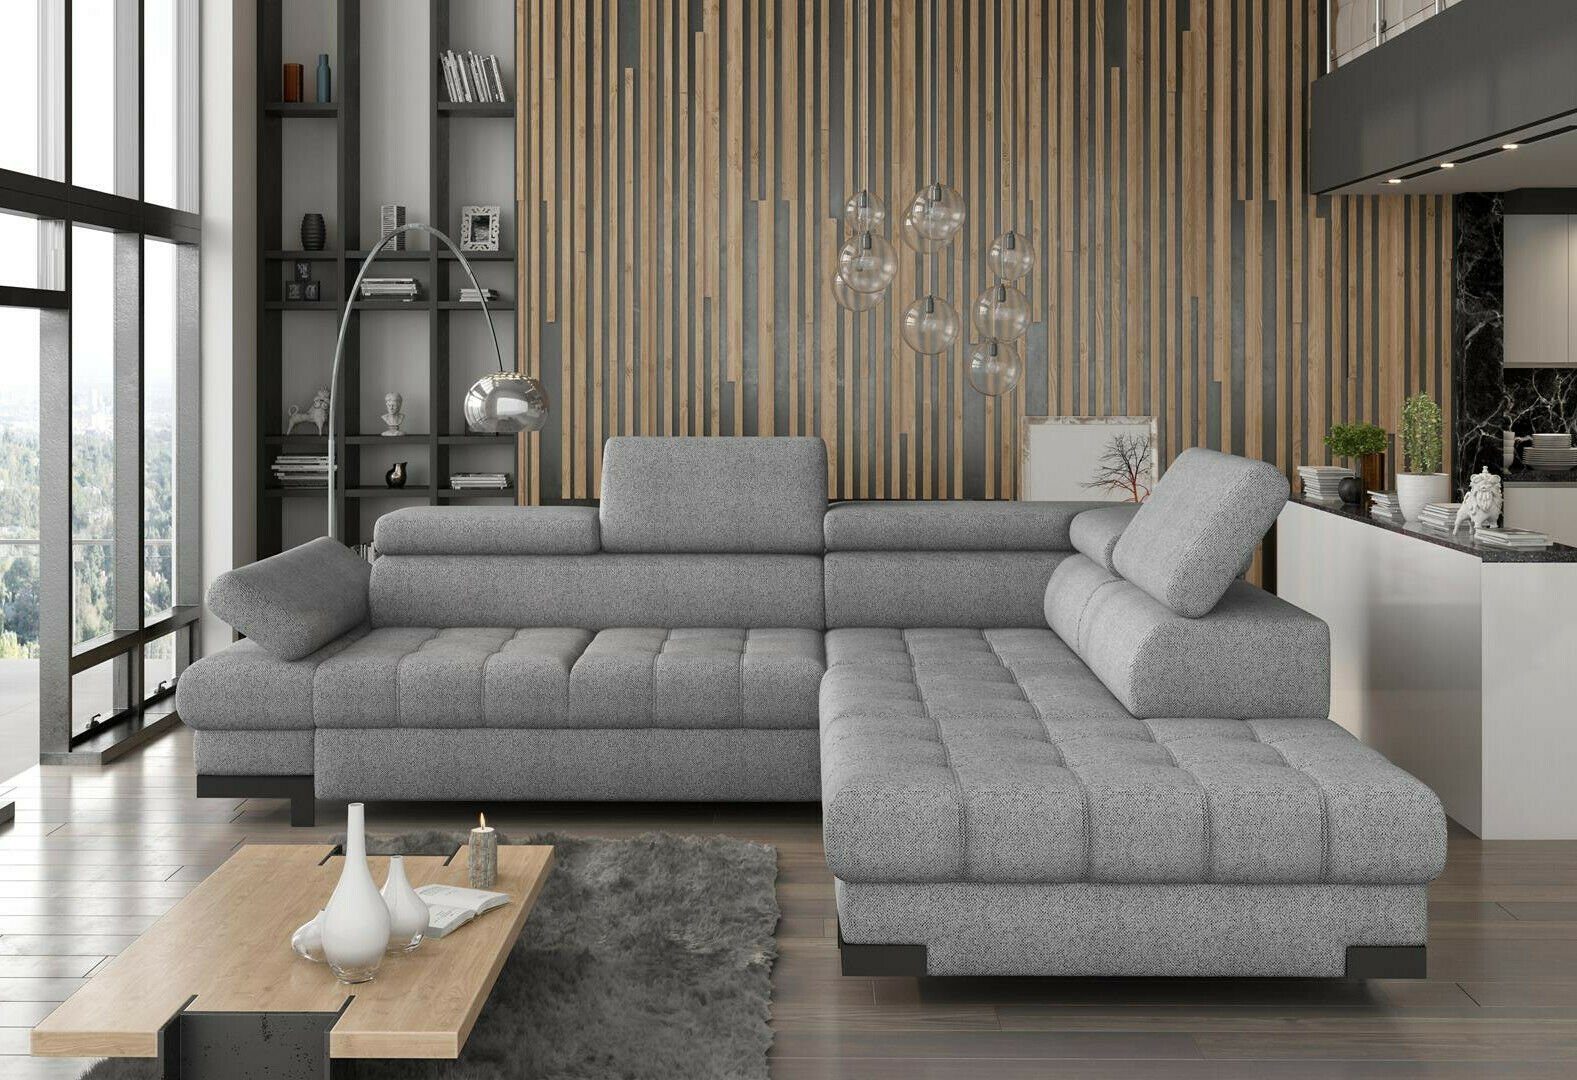 JVmoebel Sofas Ecksofa Design Grau Ecksofa, L-form Modern Wohnlandschaft Textilsofa Couch